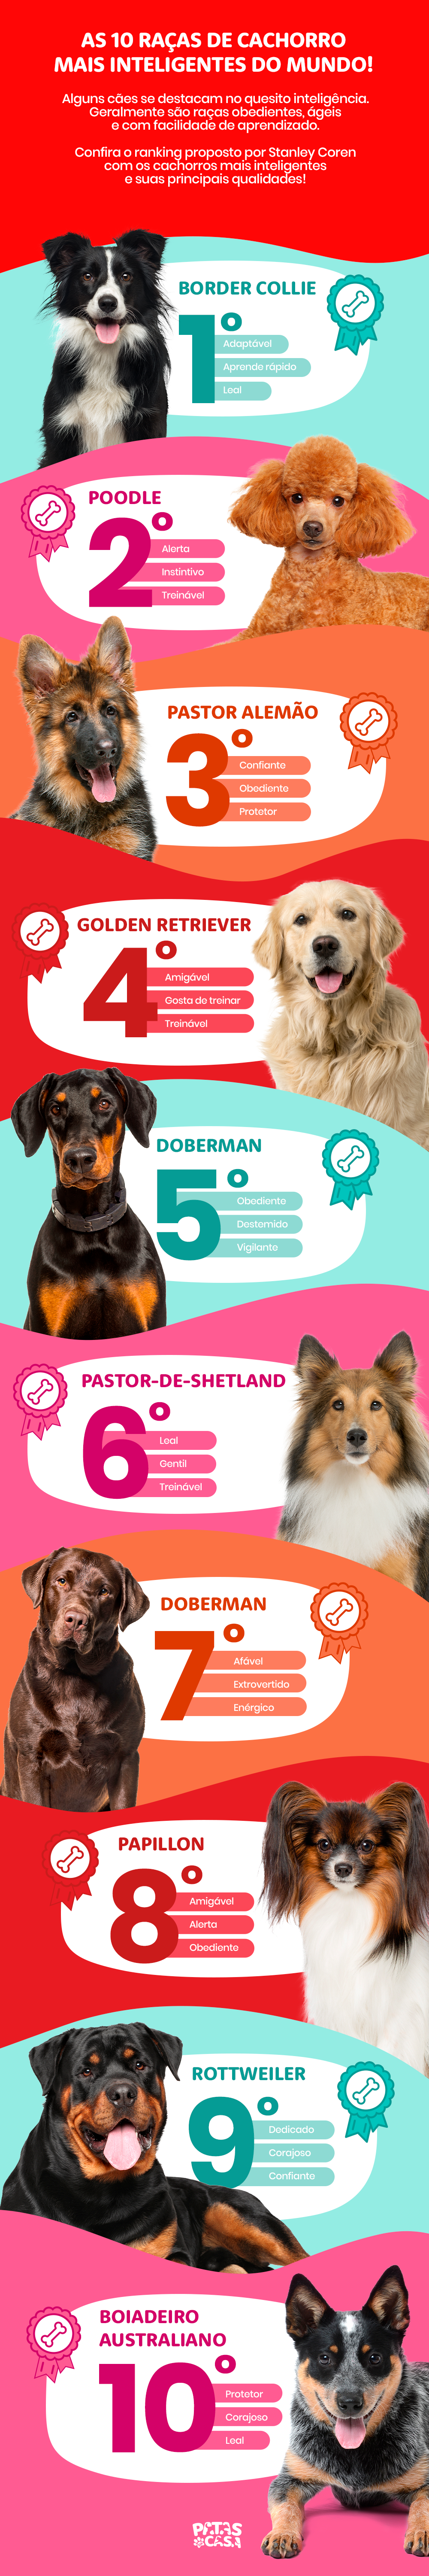 infográfico sobre raças de cachorro mais inteligentes do mundo